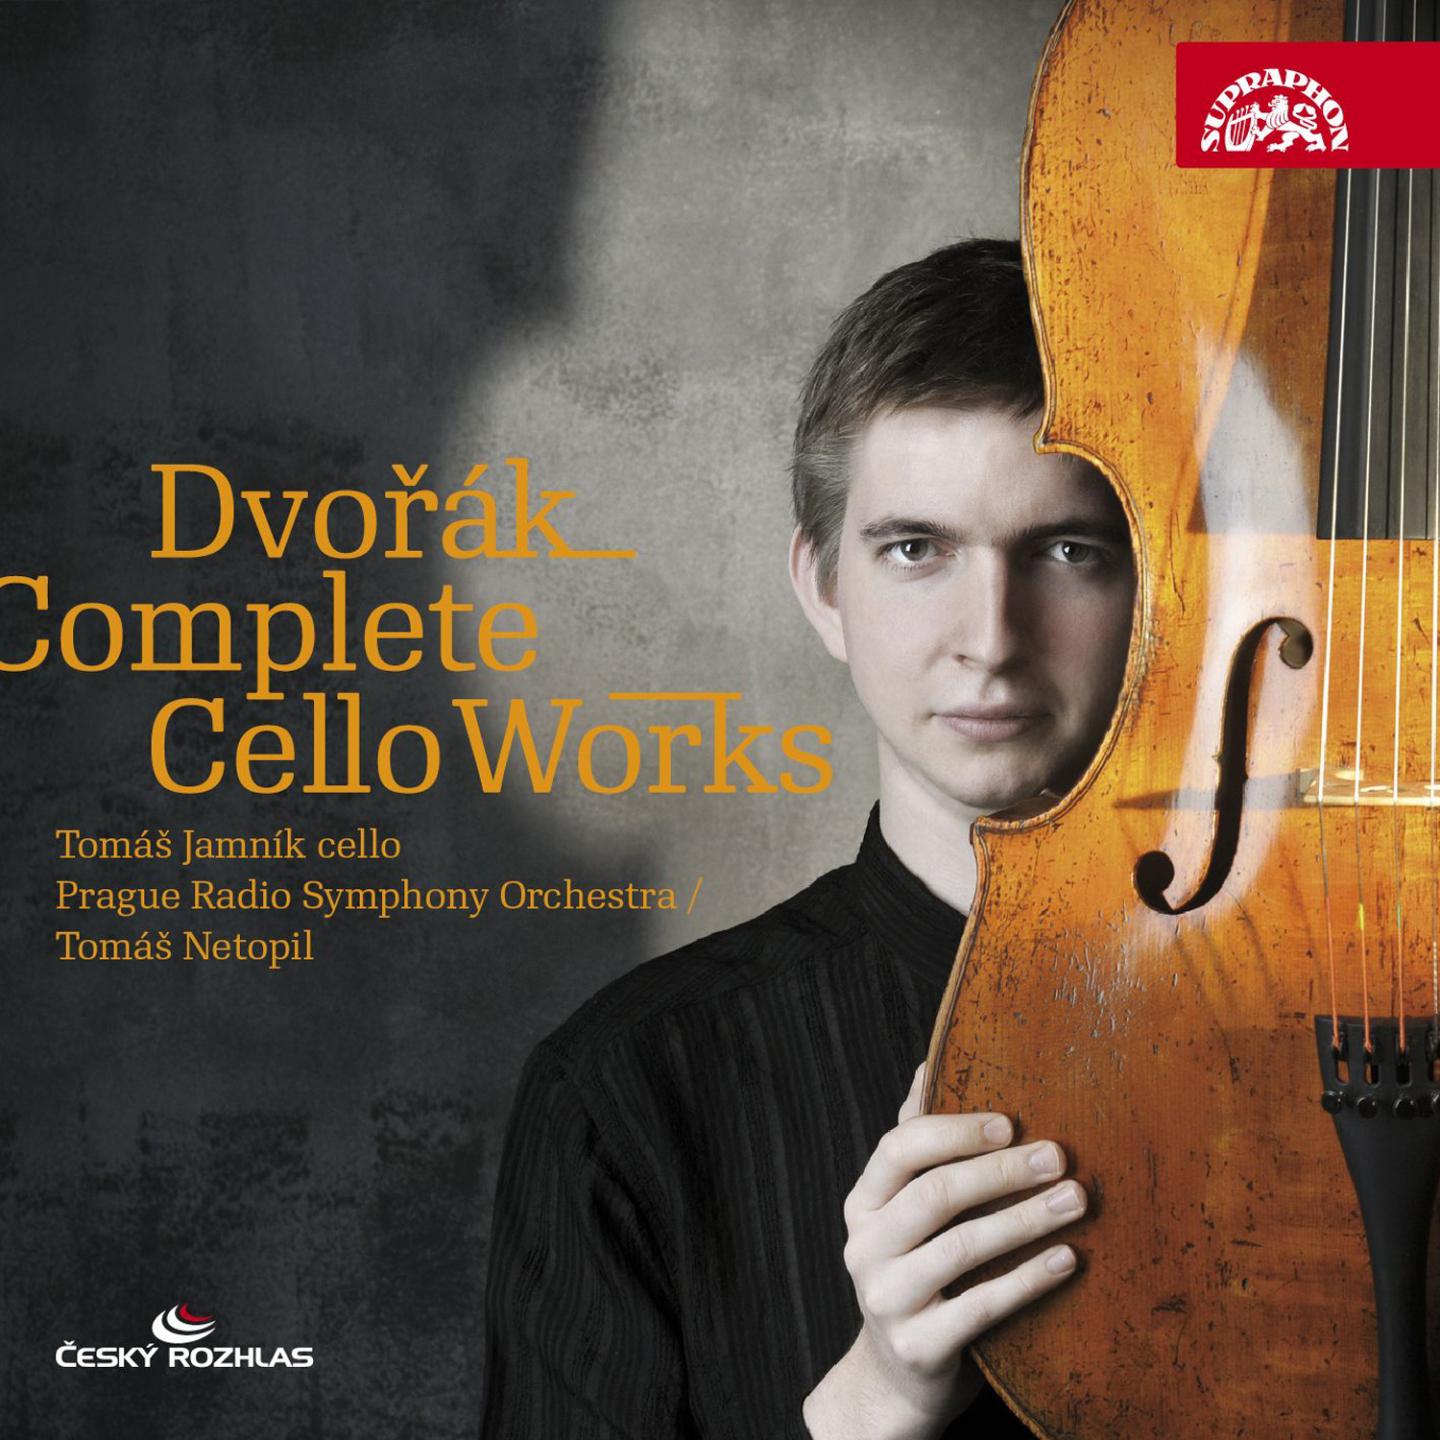 Dvoa k: Complete Cello Works